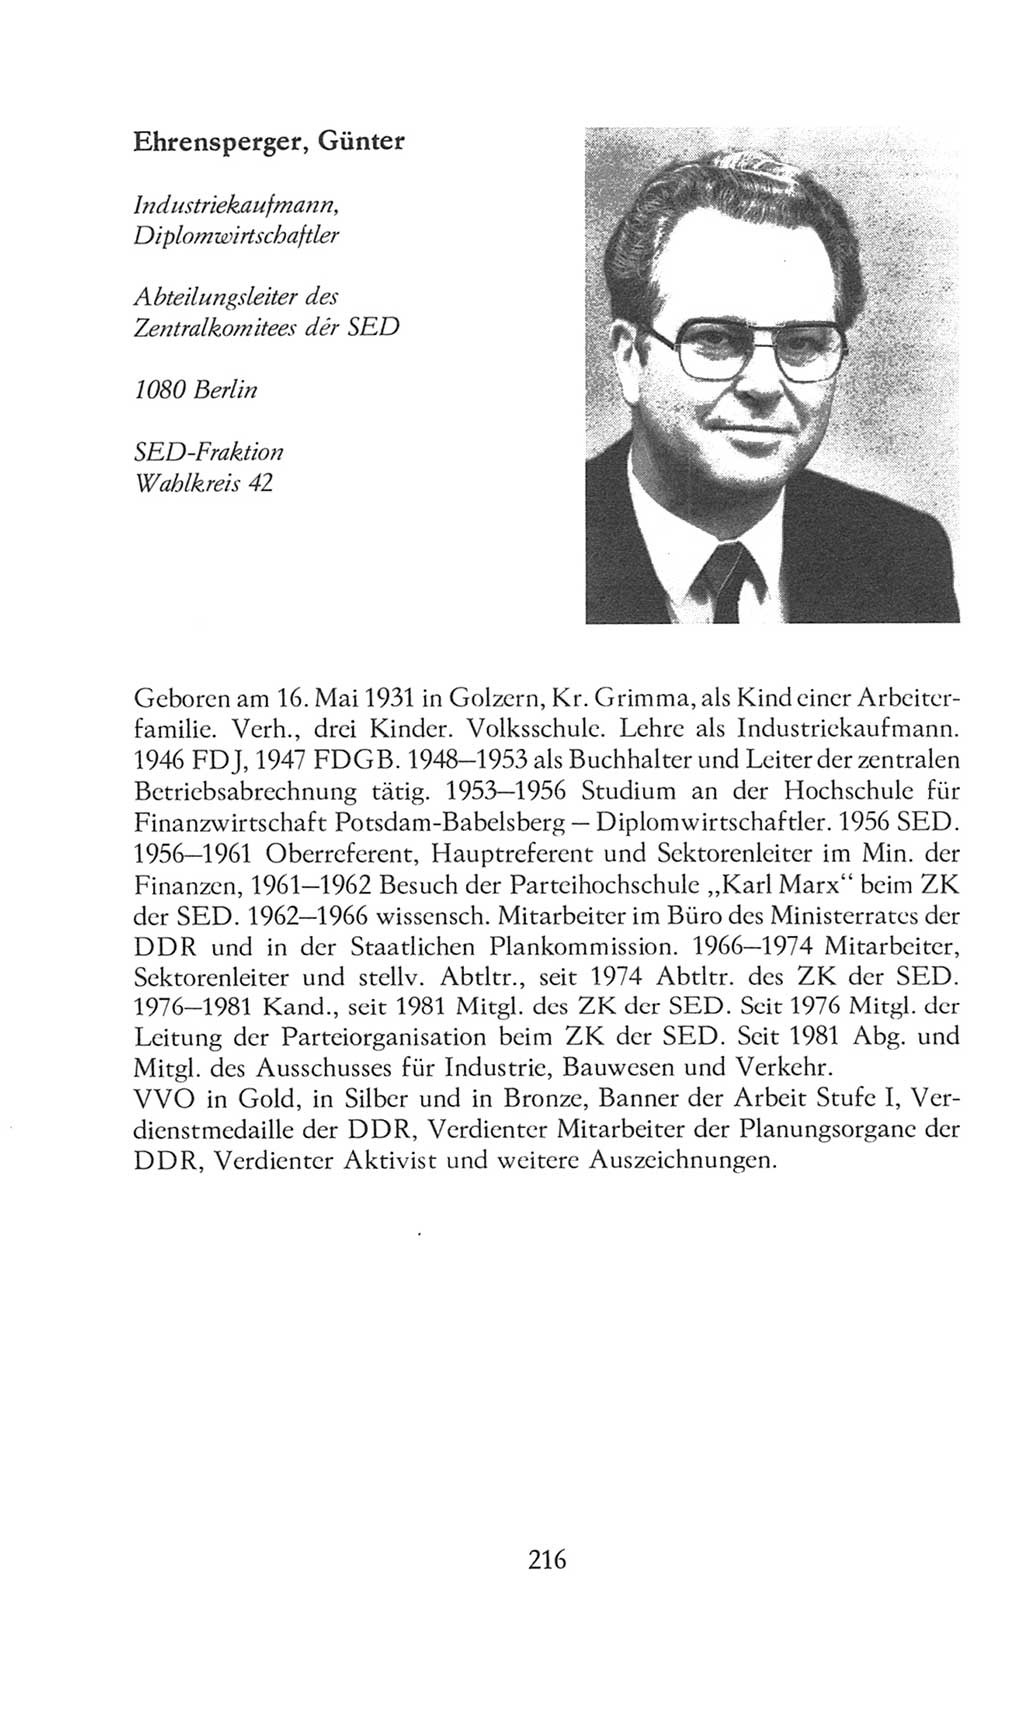 Volkskammer (VK) der Deutschen Demokratischen Republik (DDR), 8. Wahlperiode 1981-1986, Seite 216 (VK. DDR 8. WP. 1981-1986, S. 216)